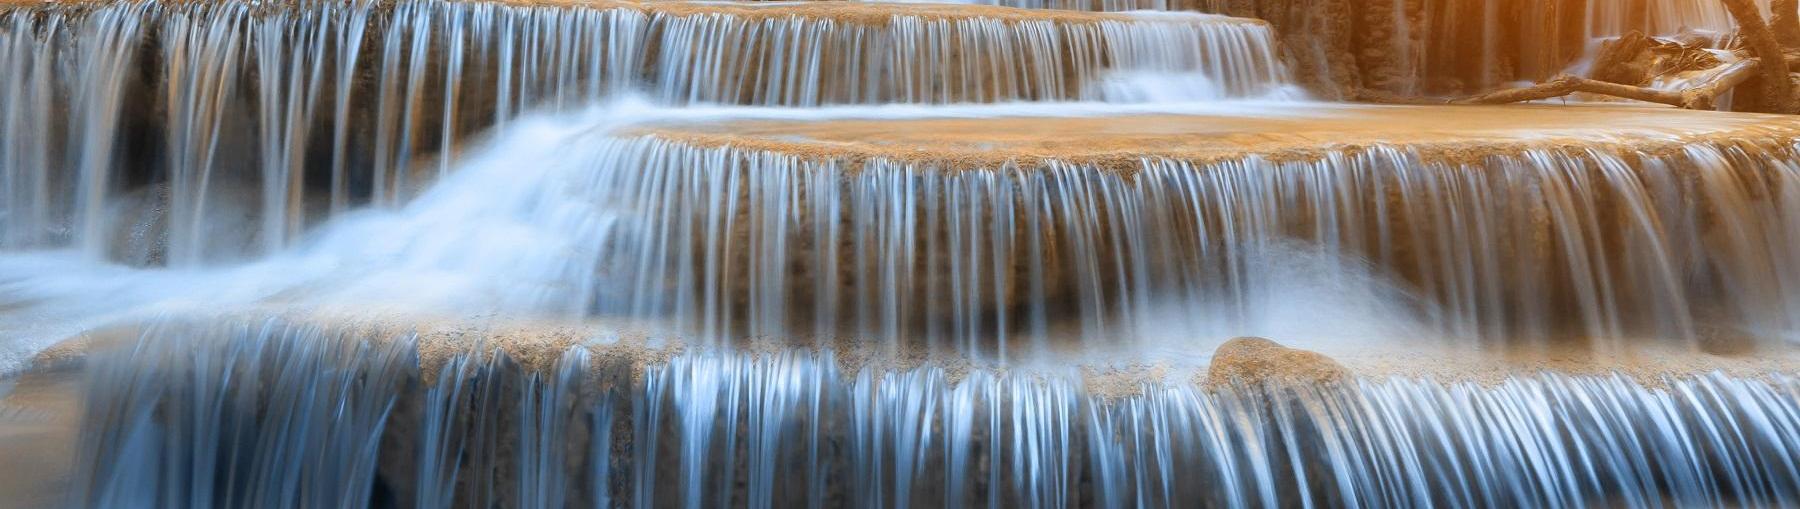 Tauron: elektrownie wodne wygrały aukcje OZE. Fot. Sshutterstock